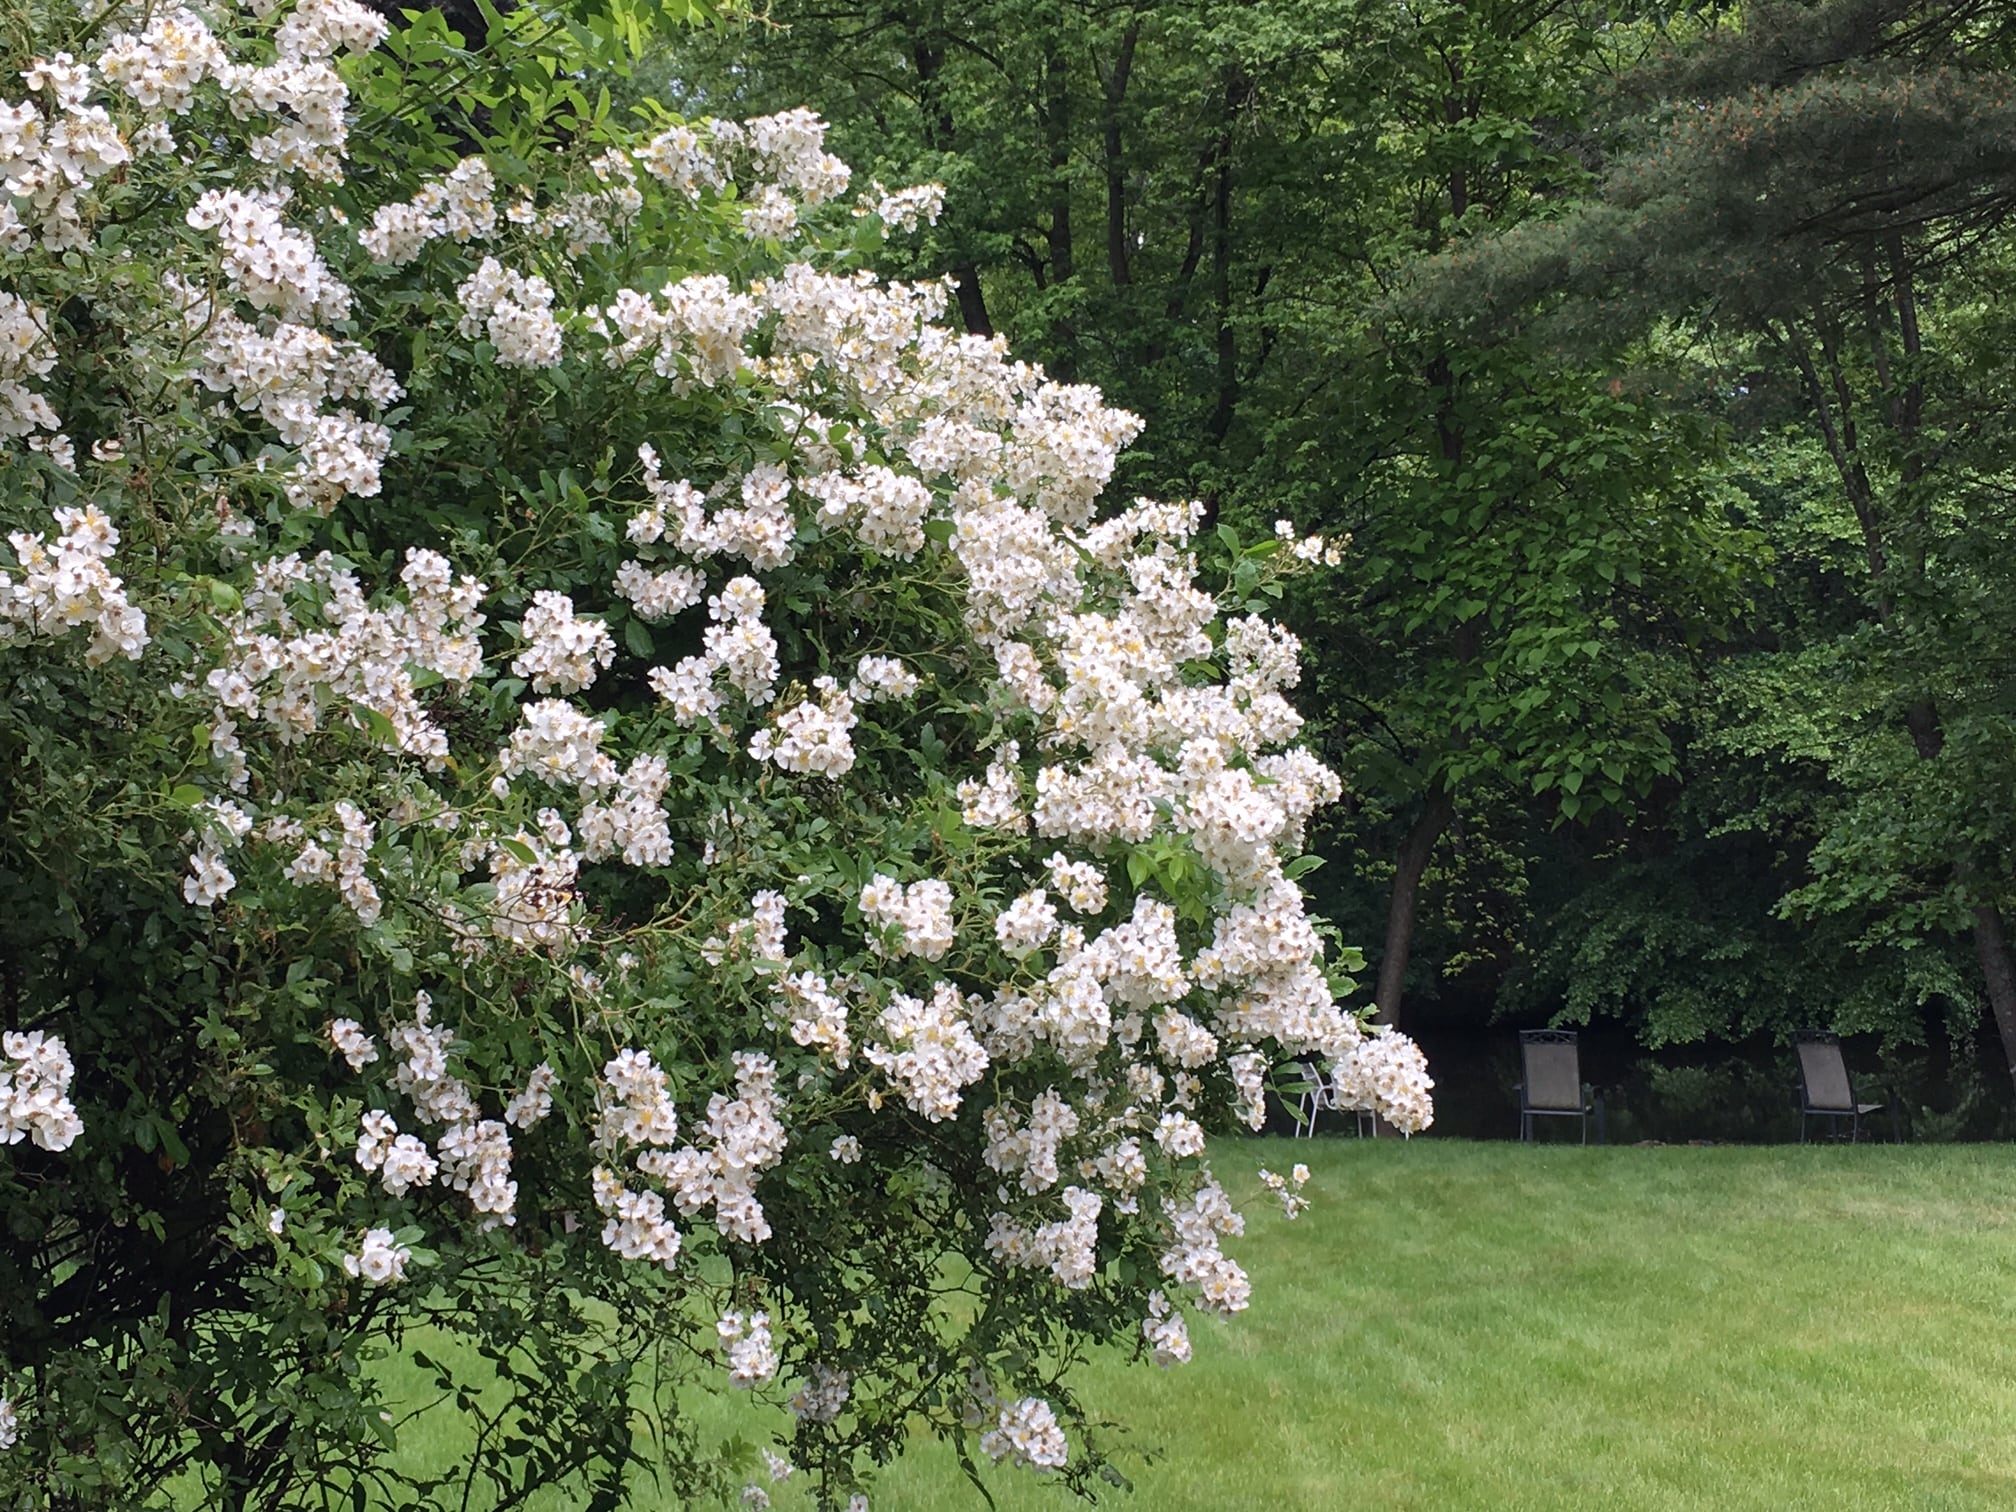 White multi-flora rose in bloom, Wellesley